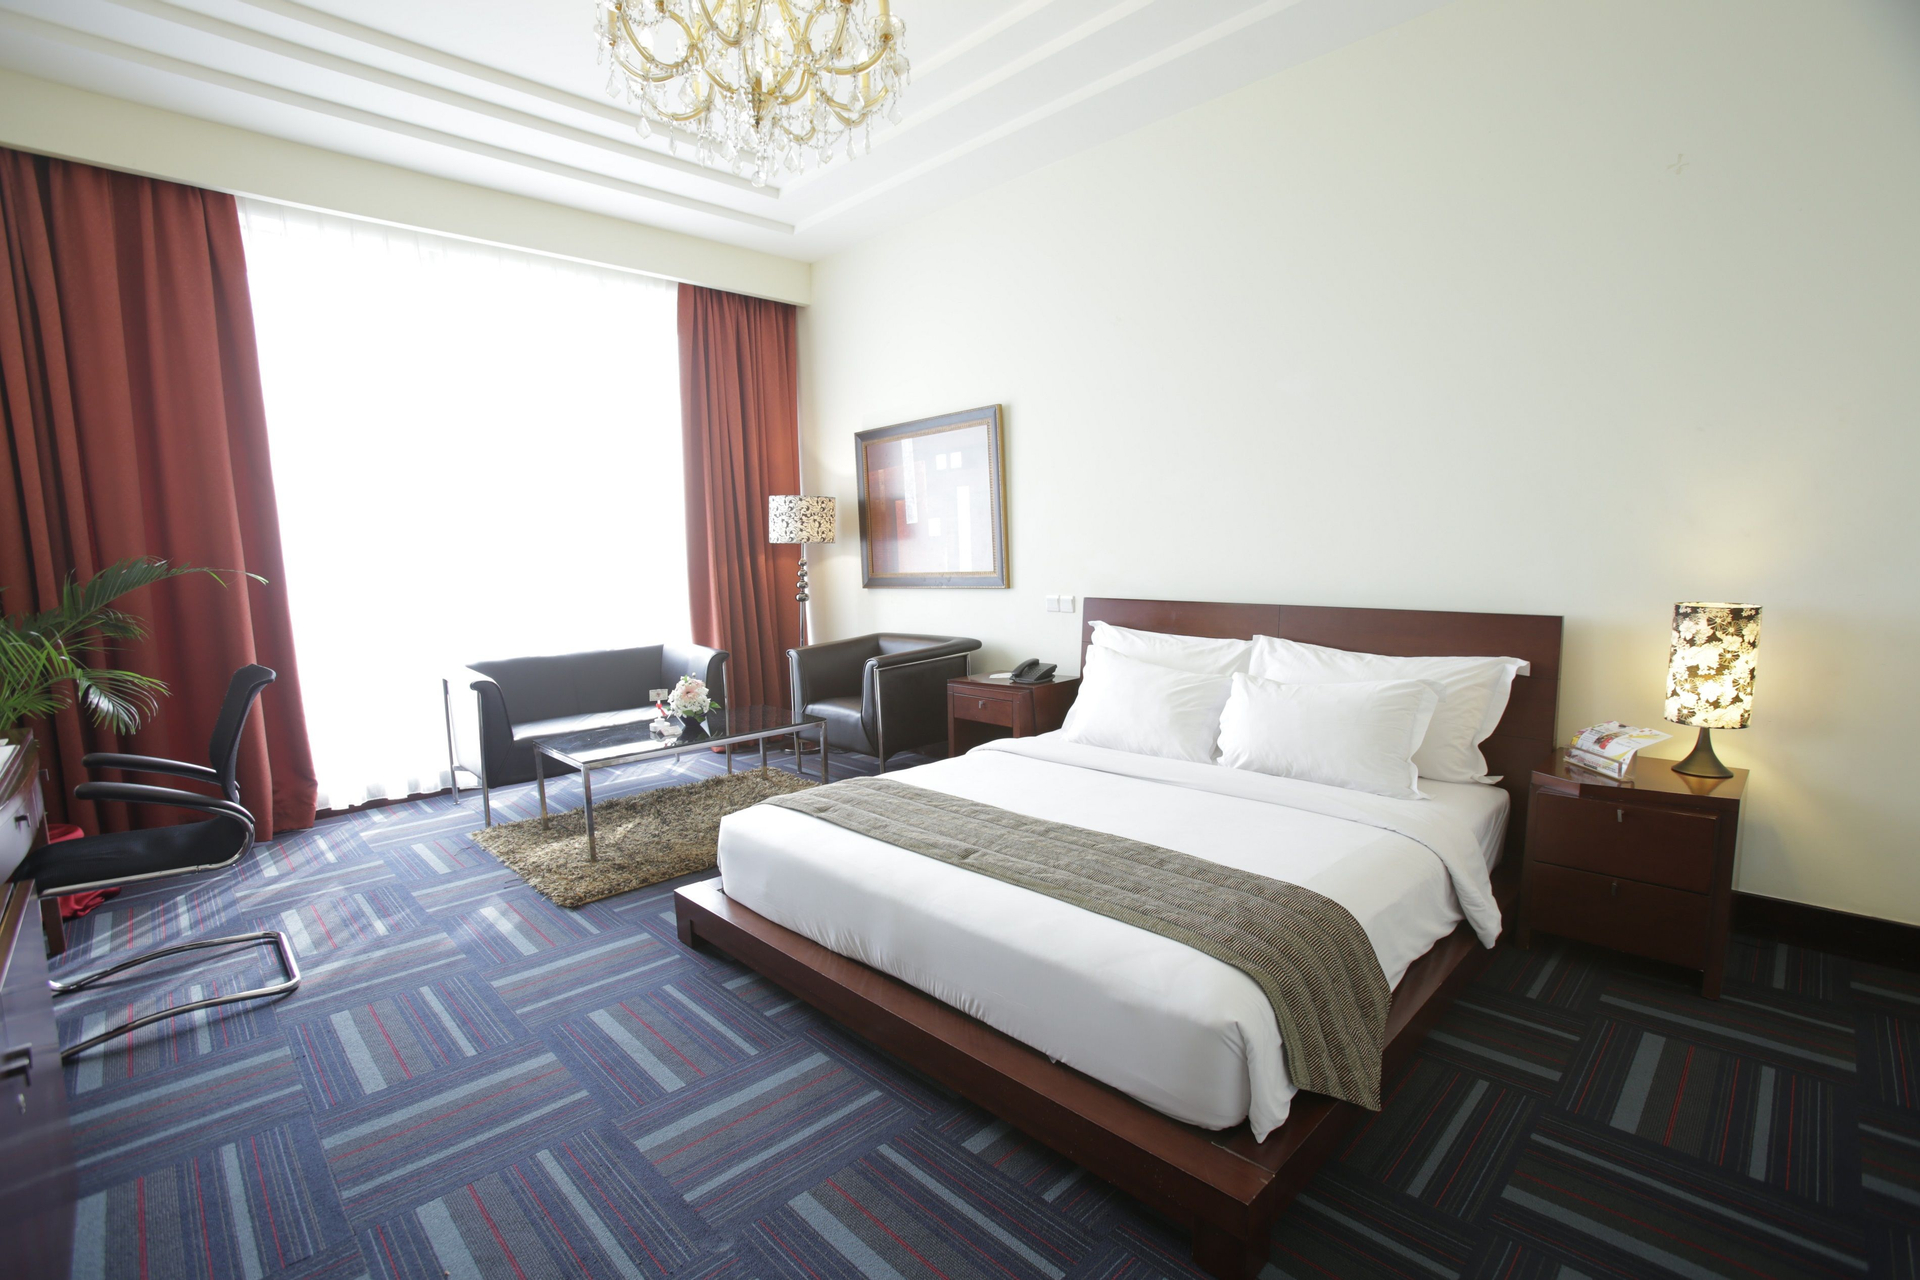 Bedroom 3, Merlynn Park Hotel, Jakarta Pusat